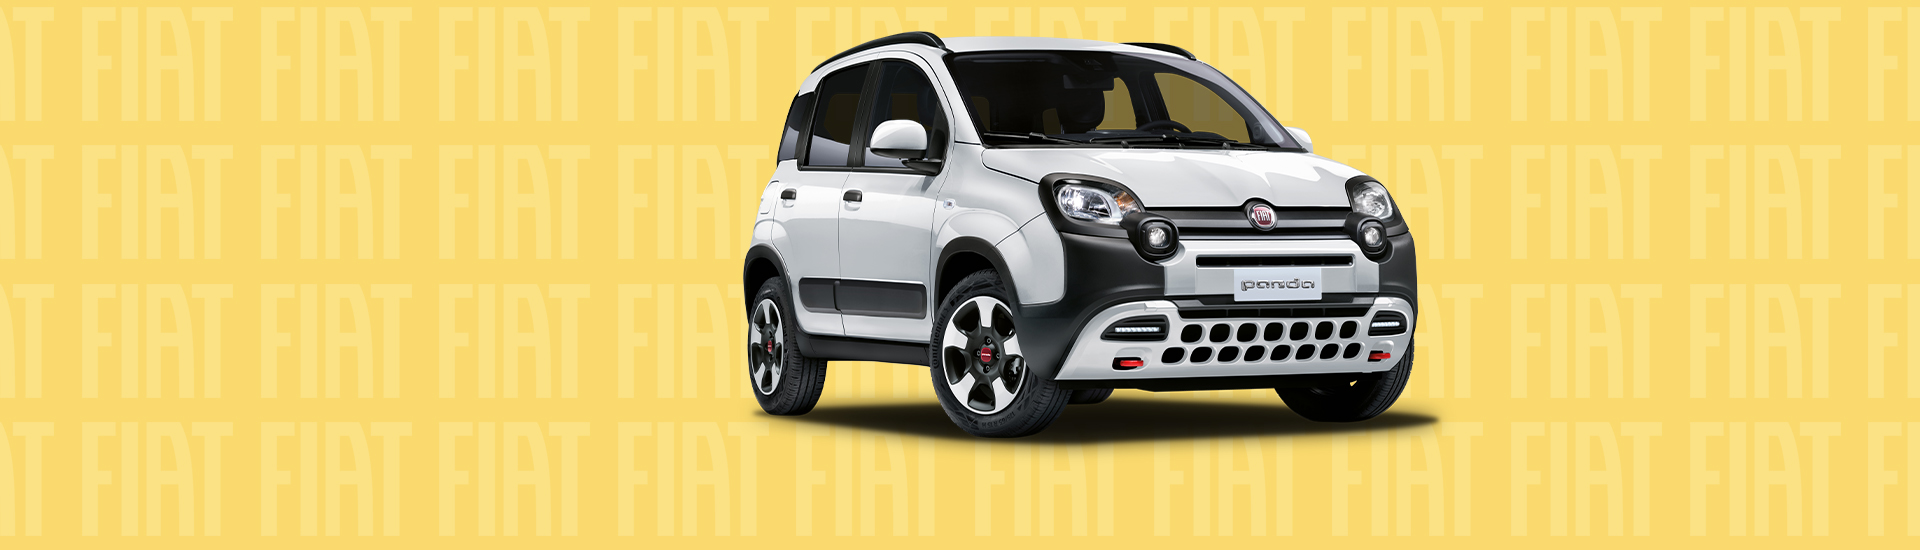 Harga Fiat Panda Terbaru, Spesifikasi dan Interior 2022!